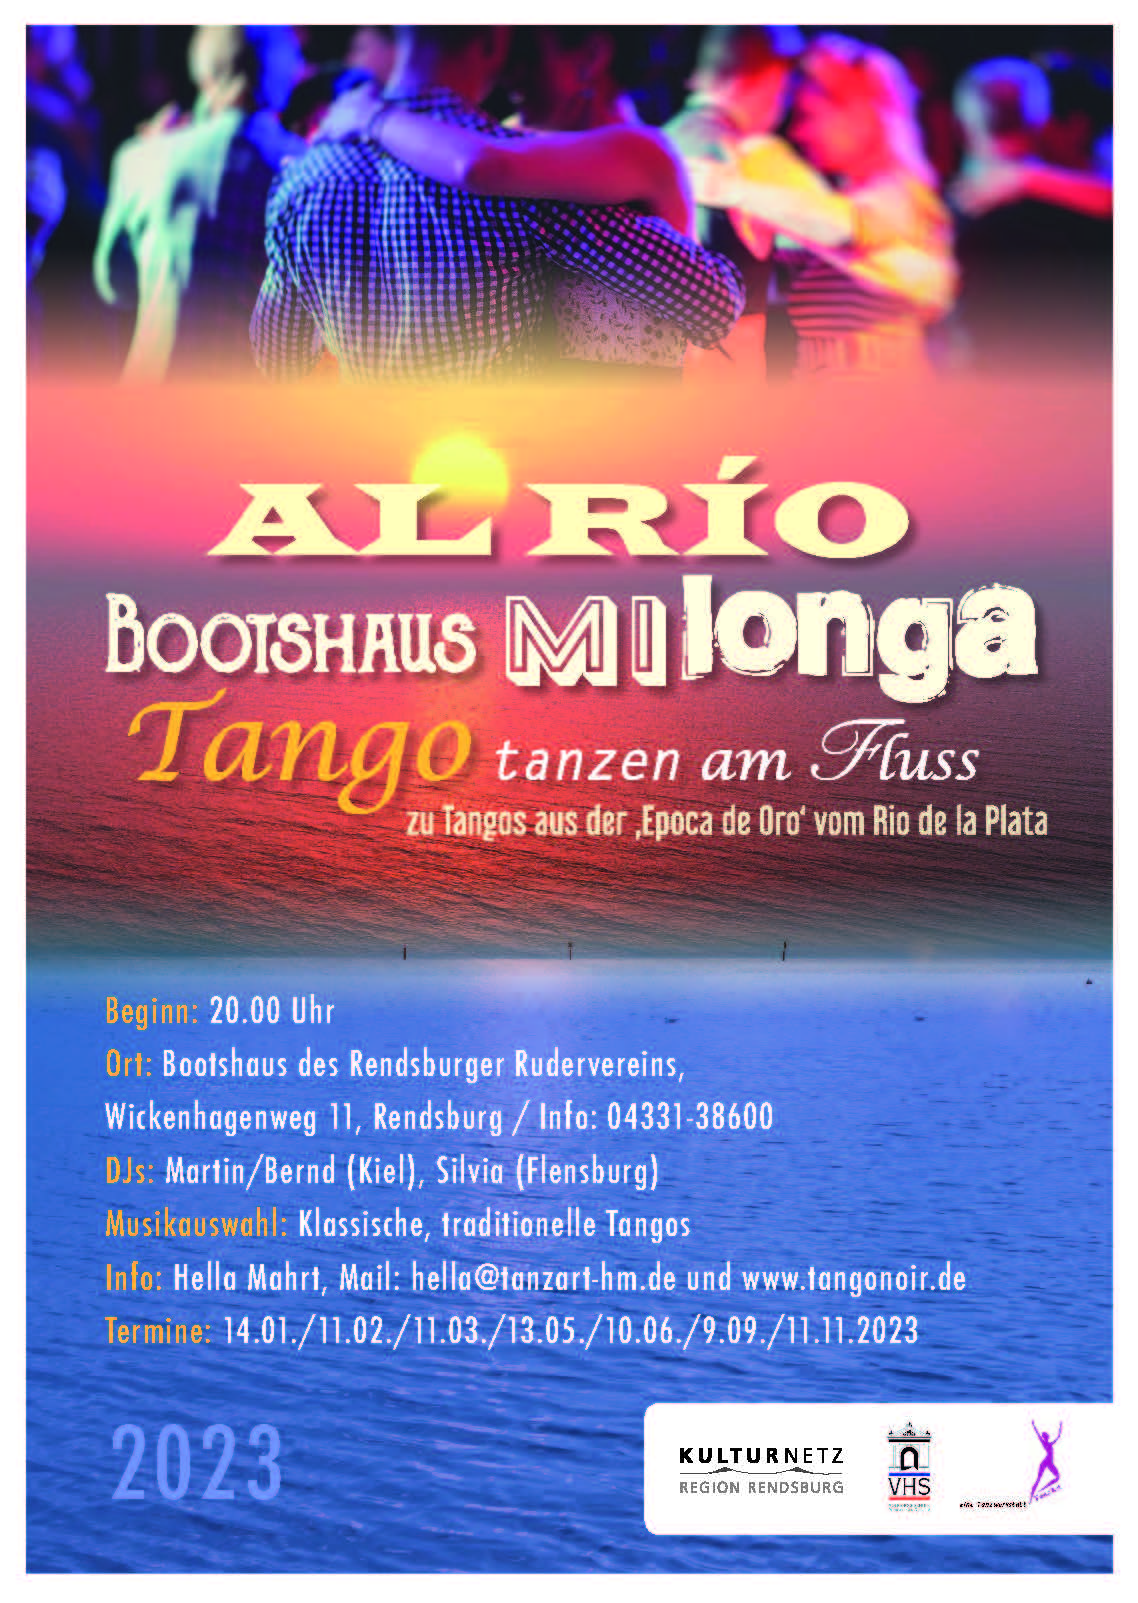 Tango tanzen am Fluss - neue Ankuendigung